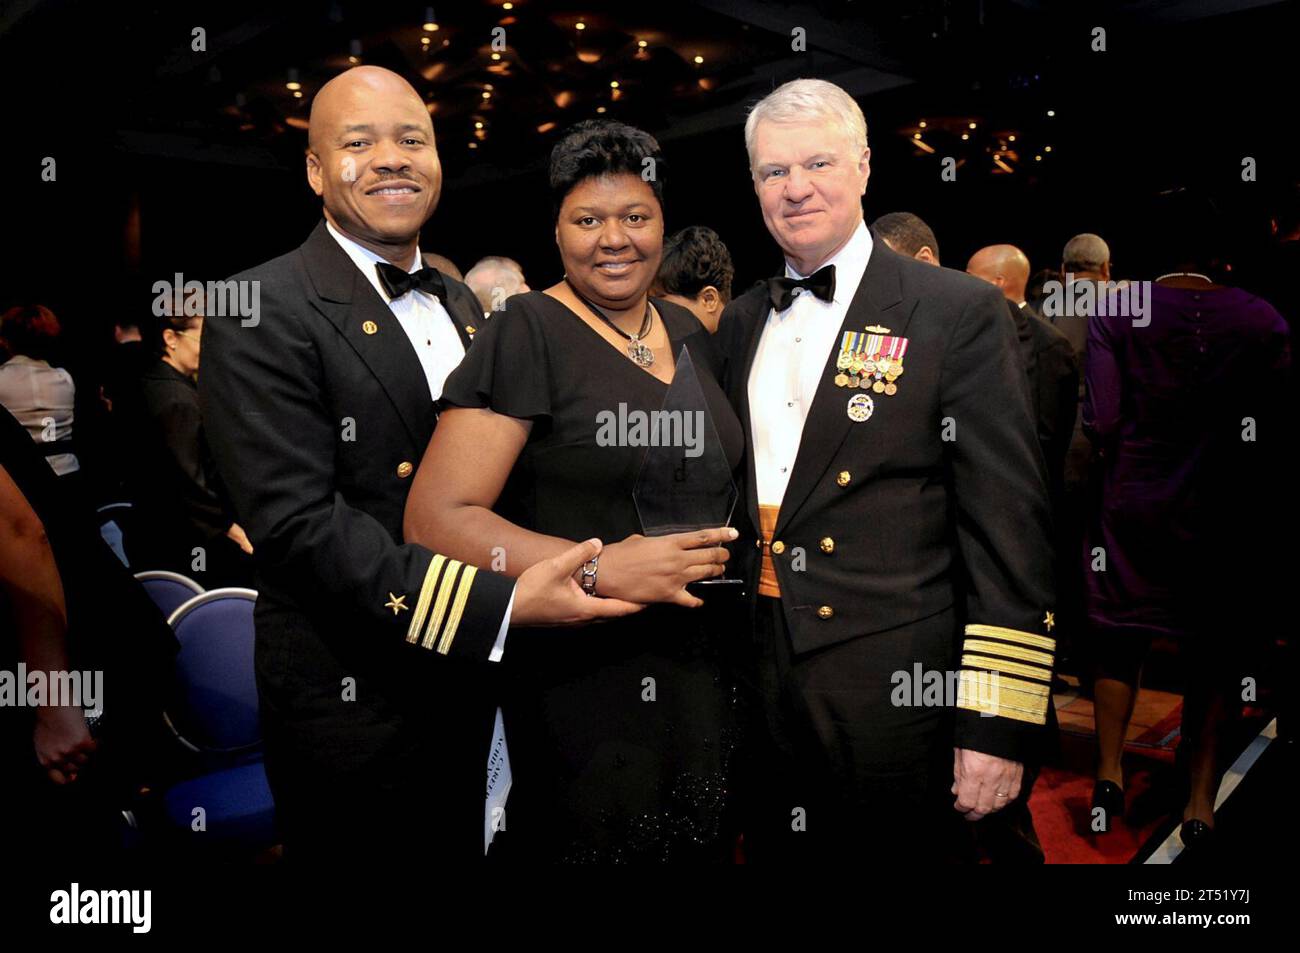 0902218273J-081 BALTIMORE (21 février 2009) Cmdt. Roger Isom et son épouse, Lisa, posent pour une photo avec le chef des opérations navales (CNO), le SMA Gary Roughead, à la fin du Prix de l’ingénieur noir de l’année 2009. IOM est le commandant du sous-marin de missiles balistiques de classe Ohio USS Wyoming (SSBN 742) et a reçu le Black Engineer of the Year Award pour ses réalisations professionnelles au gouvernement. Marine Banque D'Images